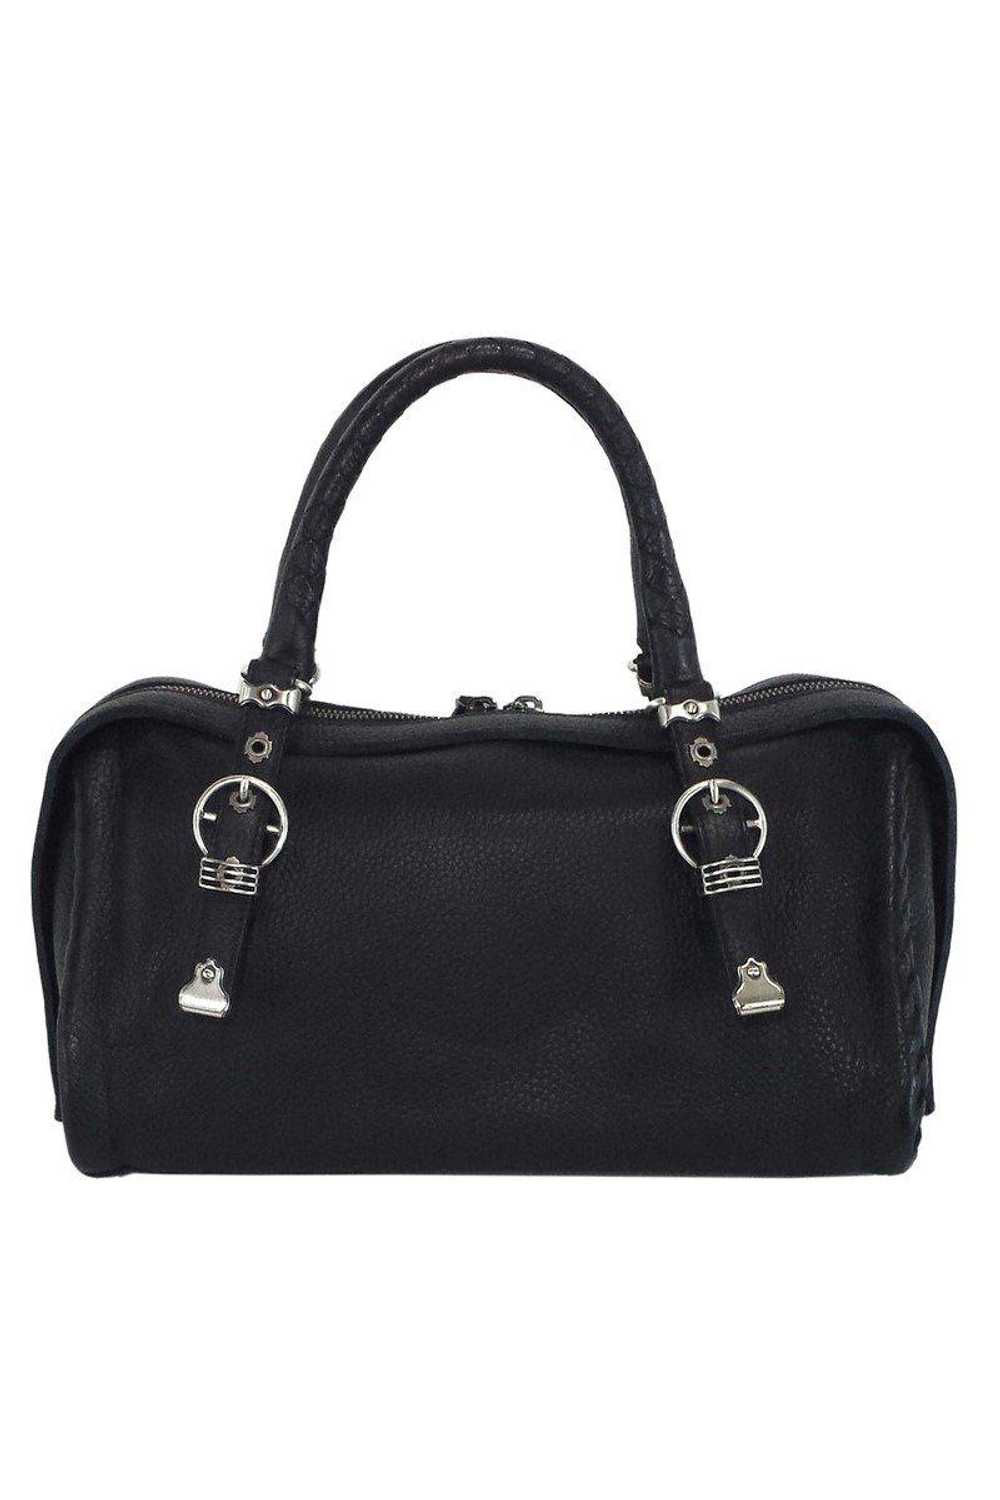 Bottega Veneta - Black Pebbled Leather Handbag - image 1